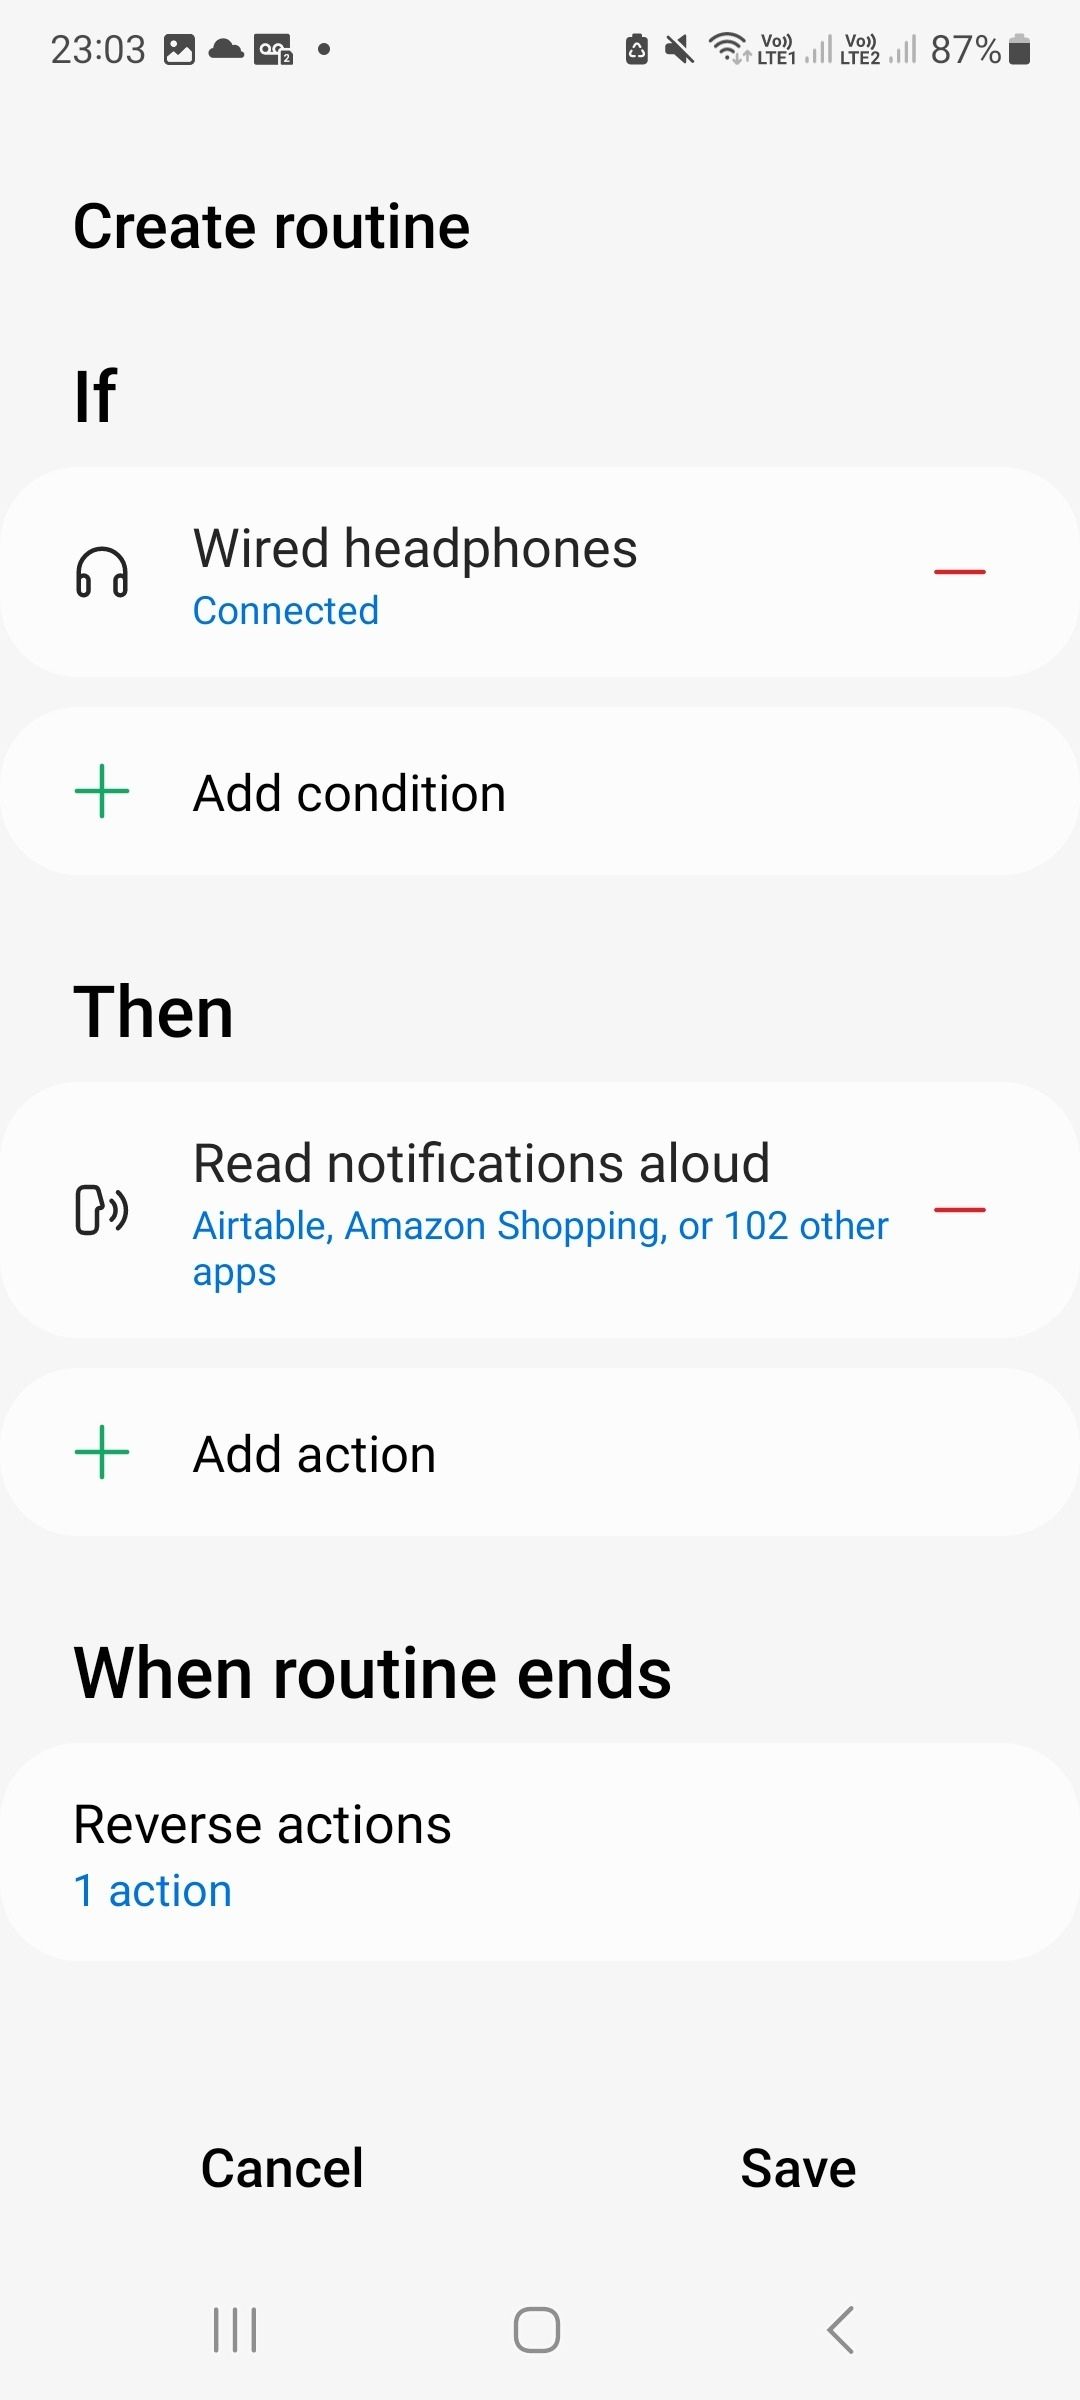 Captura de tela do aplicativo bixby mostrando as configurações de rotina selecionadas